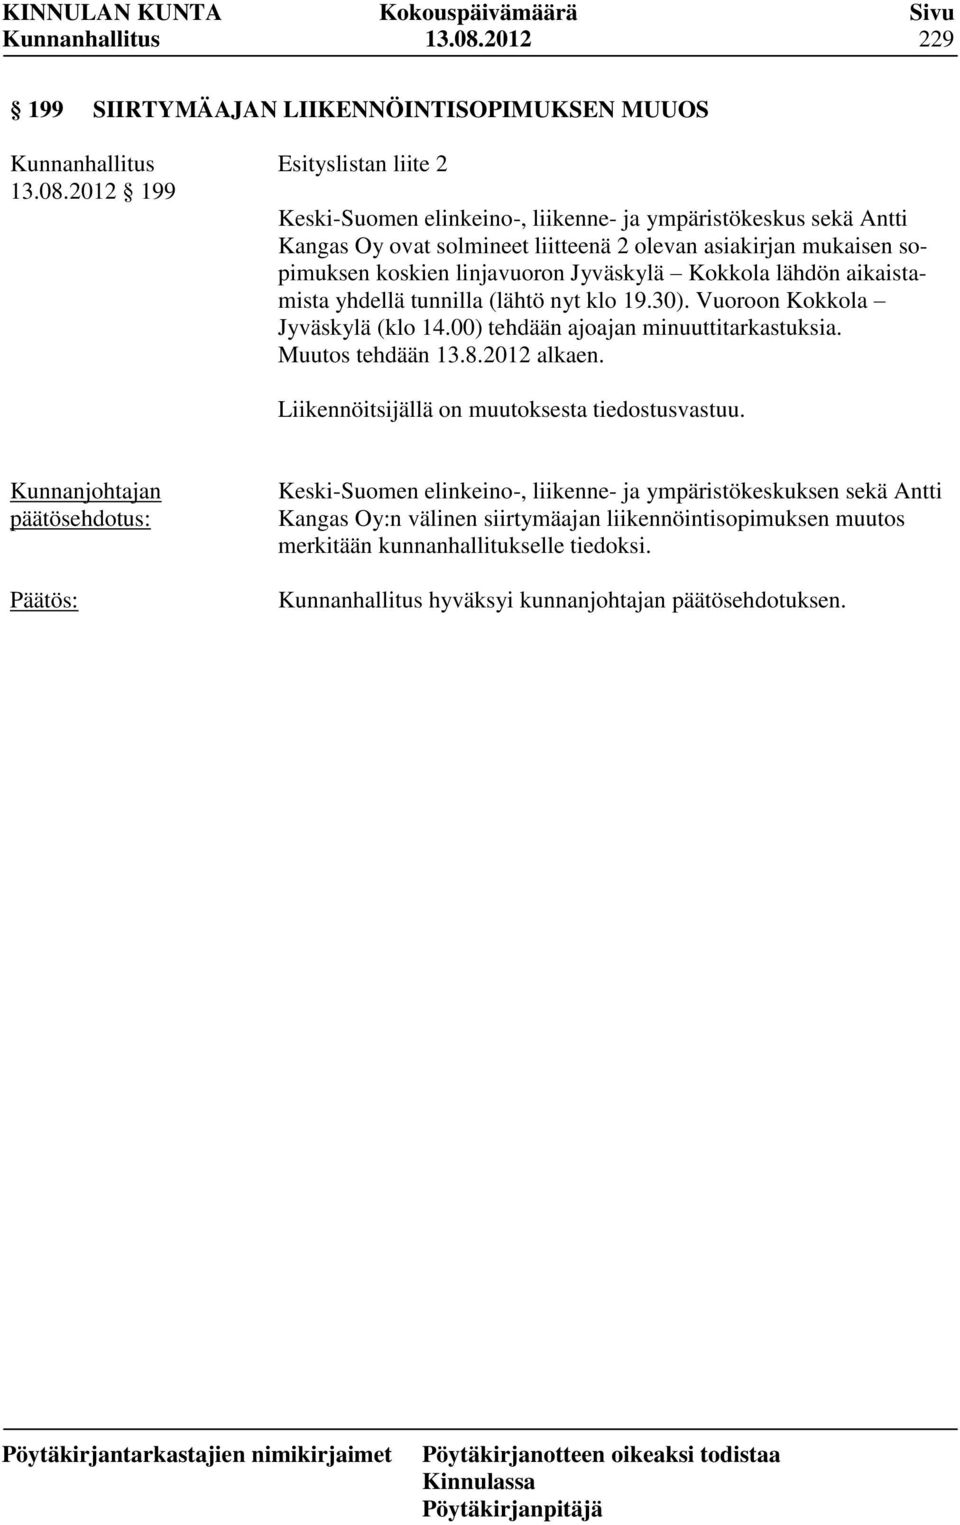 2 olevan asiakirjan mukaisen sopimuksen koskien linjavuoron Jyväskylä Kokkola lähdön aikaistamista yhdellä tunnilla (lähtö nyt klo 19.30). Vuoroon Kokkola Jyväskylä (klo 14.